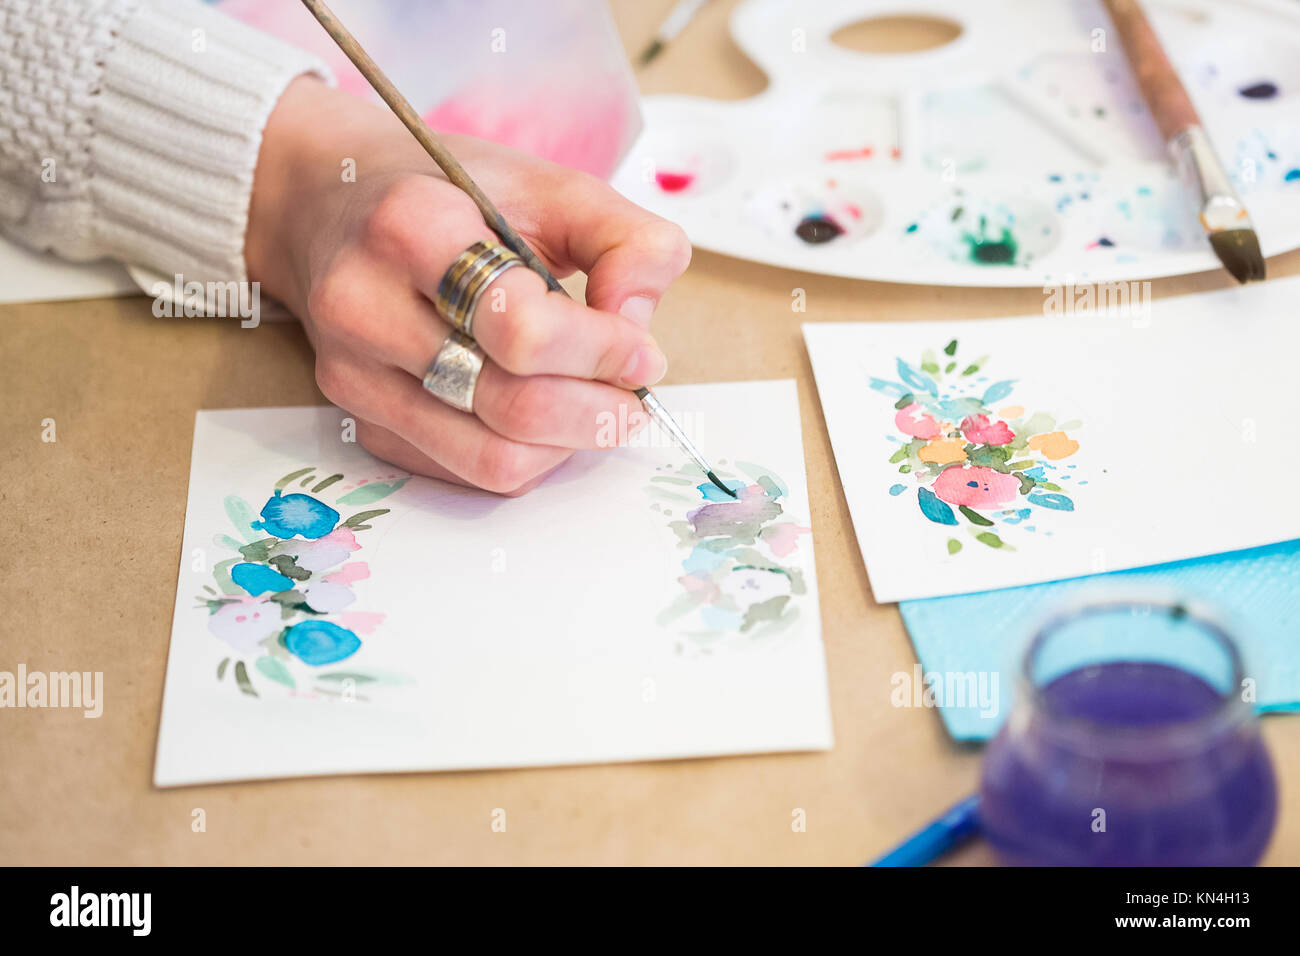 Basteln, Malen, hobby Konzept. Schließen der weiblichen arm, die dünnen  Pinsel und Zeichnen von Blumen auf schwerem Papier, das eher grobe und für  greetin Karten verwendet Stockfotografie - Alamy